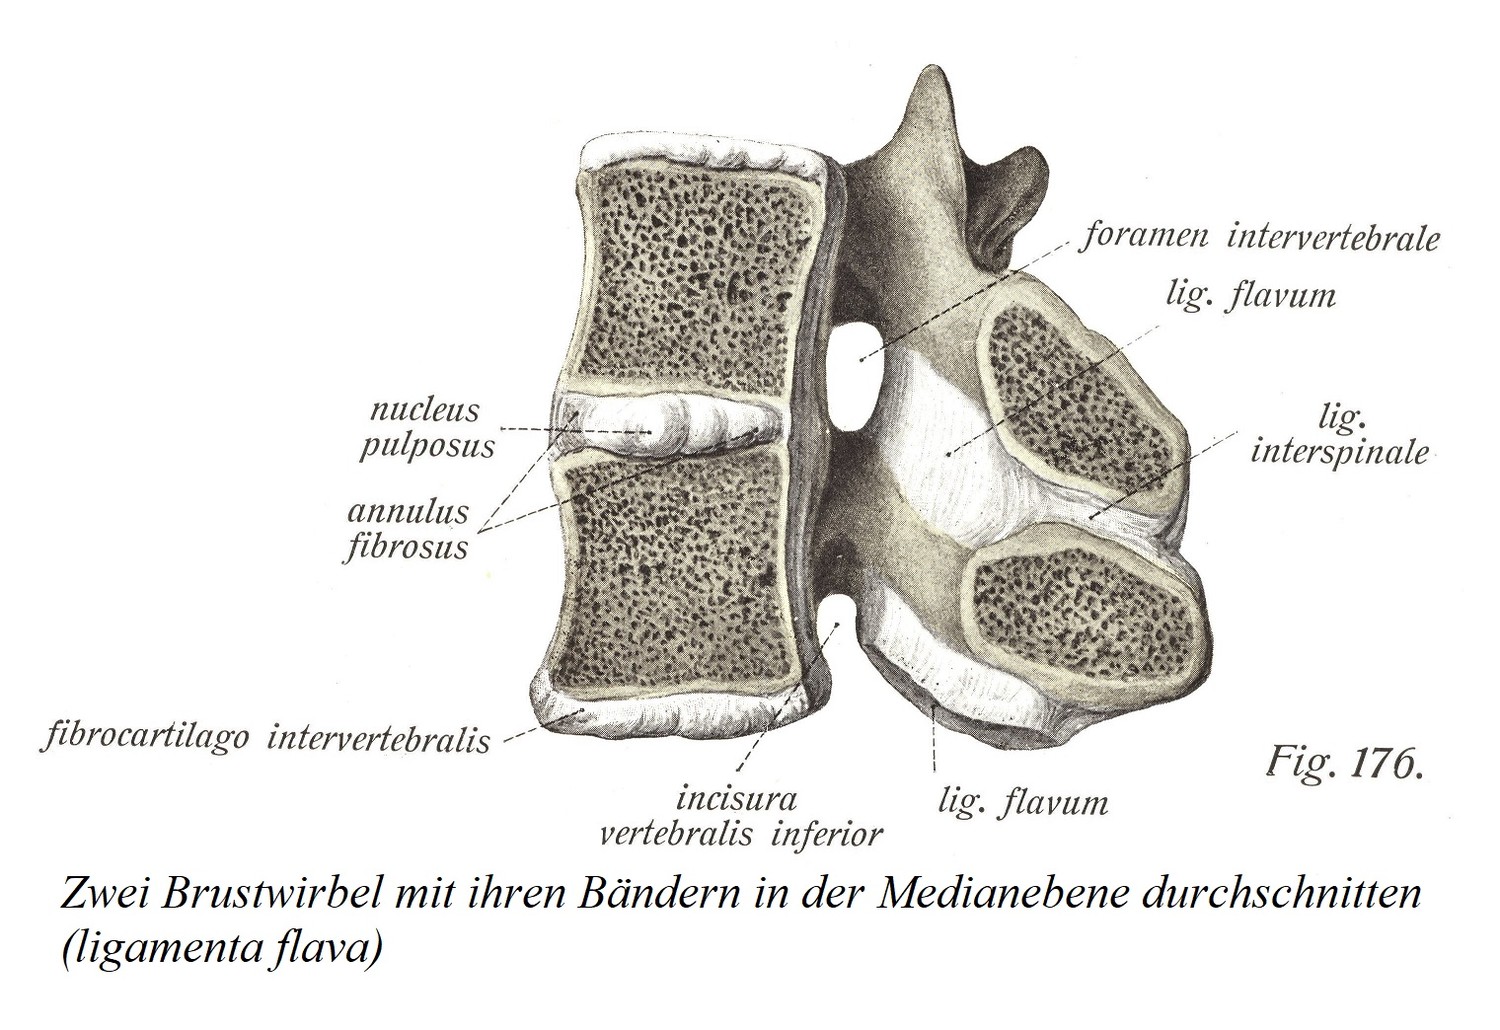 Два грудных позвонка с их связками, разделенными в срединной плоскости (ligamenta flava)